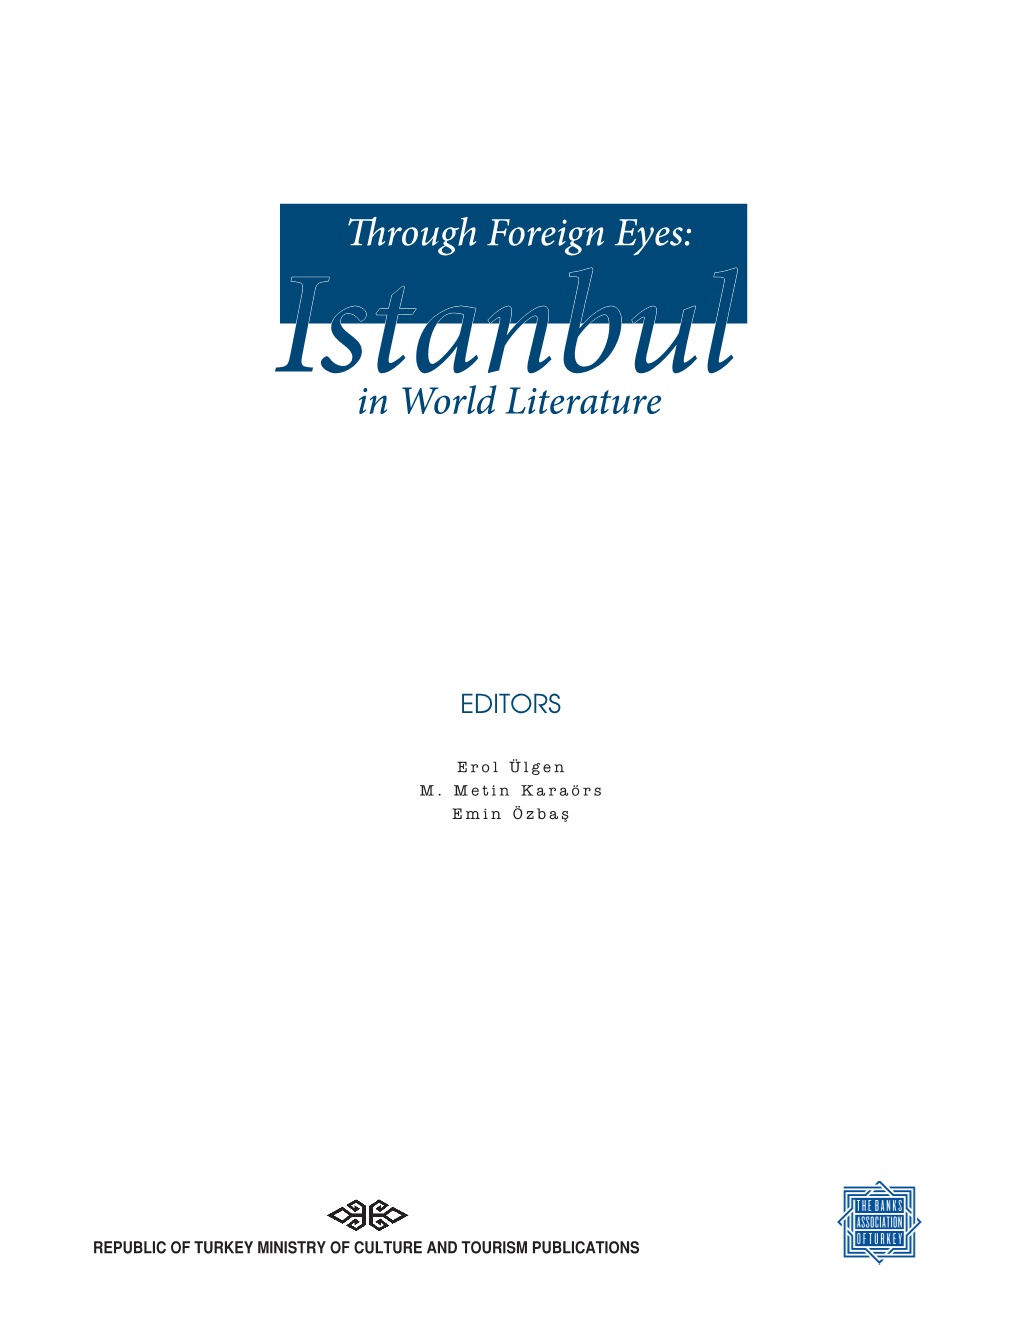 Through Foreign Eyes: in World Literature